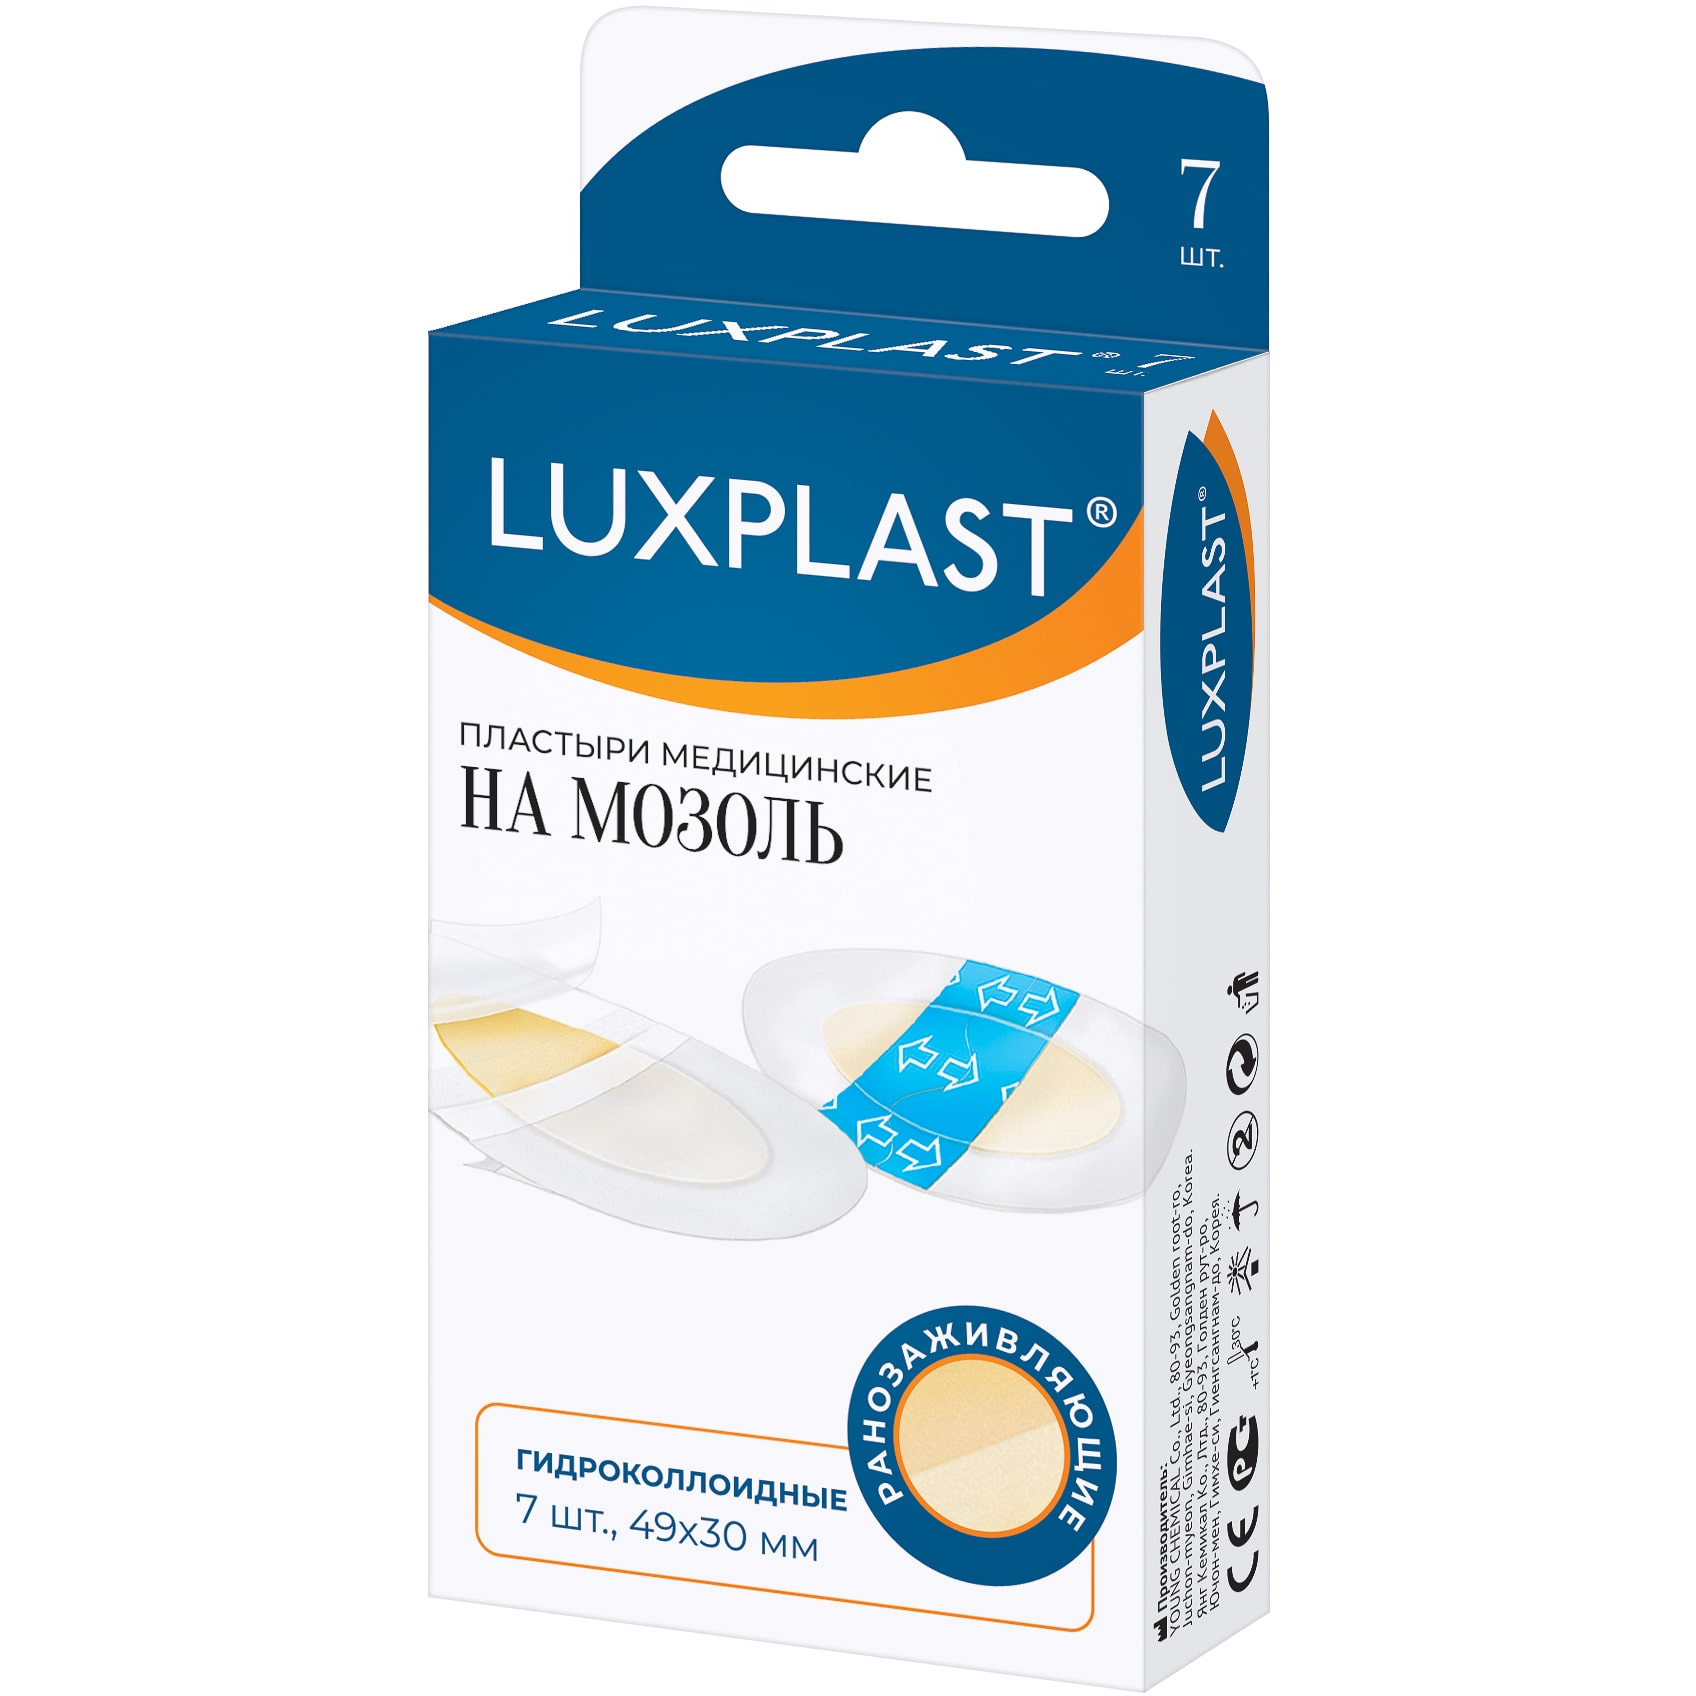 Пластырь Luxplast медицинский гидроколлоидный на мозоль 7 шт, цвет белый - фото 1